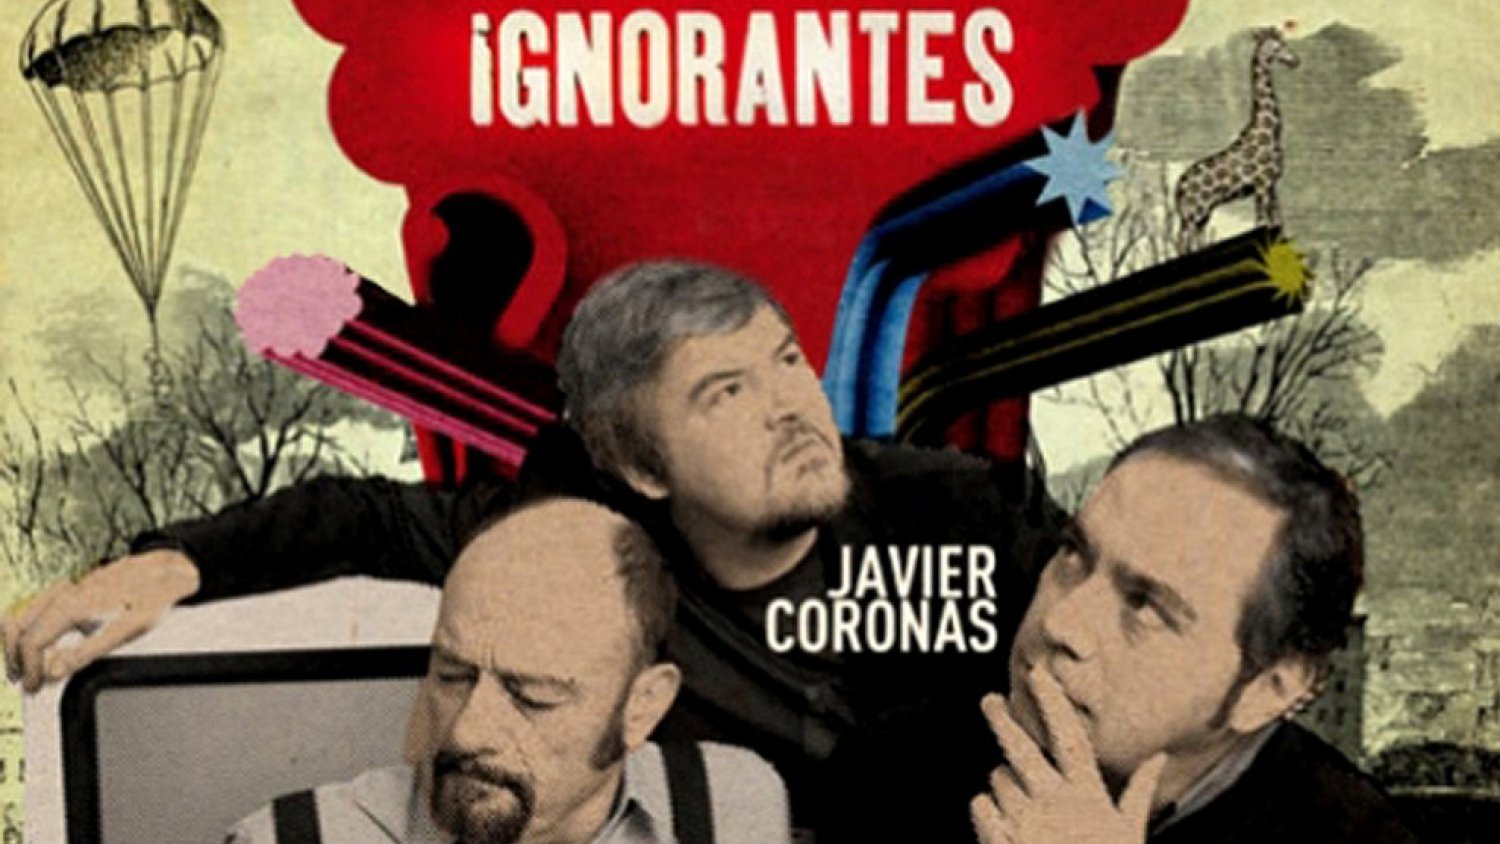 El Cine Albéniz acoge la grabación de dos programas de 'Ilustres ignorantes' de CANAL+